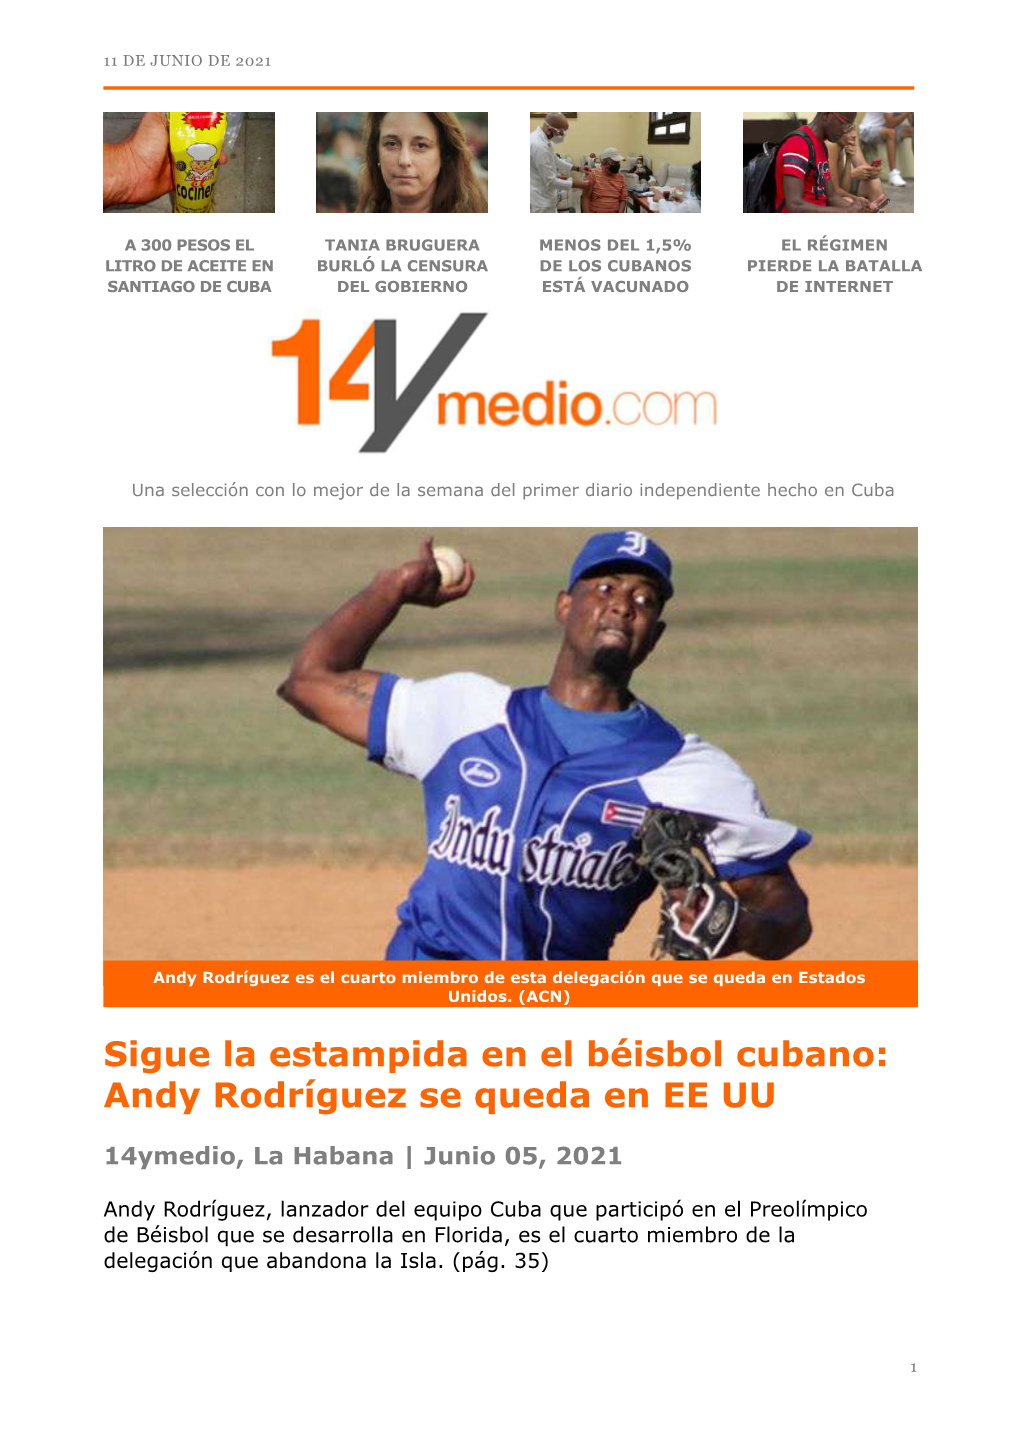 Sigue La Estampida En El Béisbol Cubano: Andy Rodríguez Se Queda En EE UU